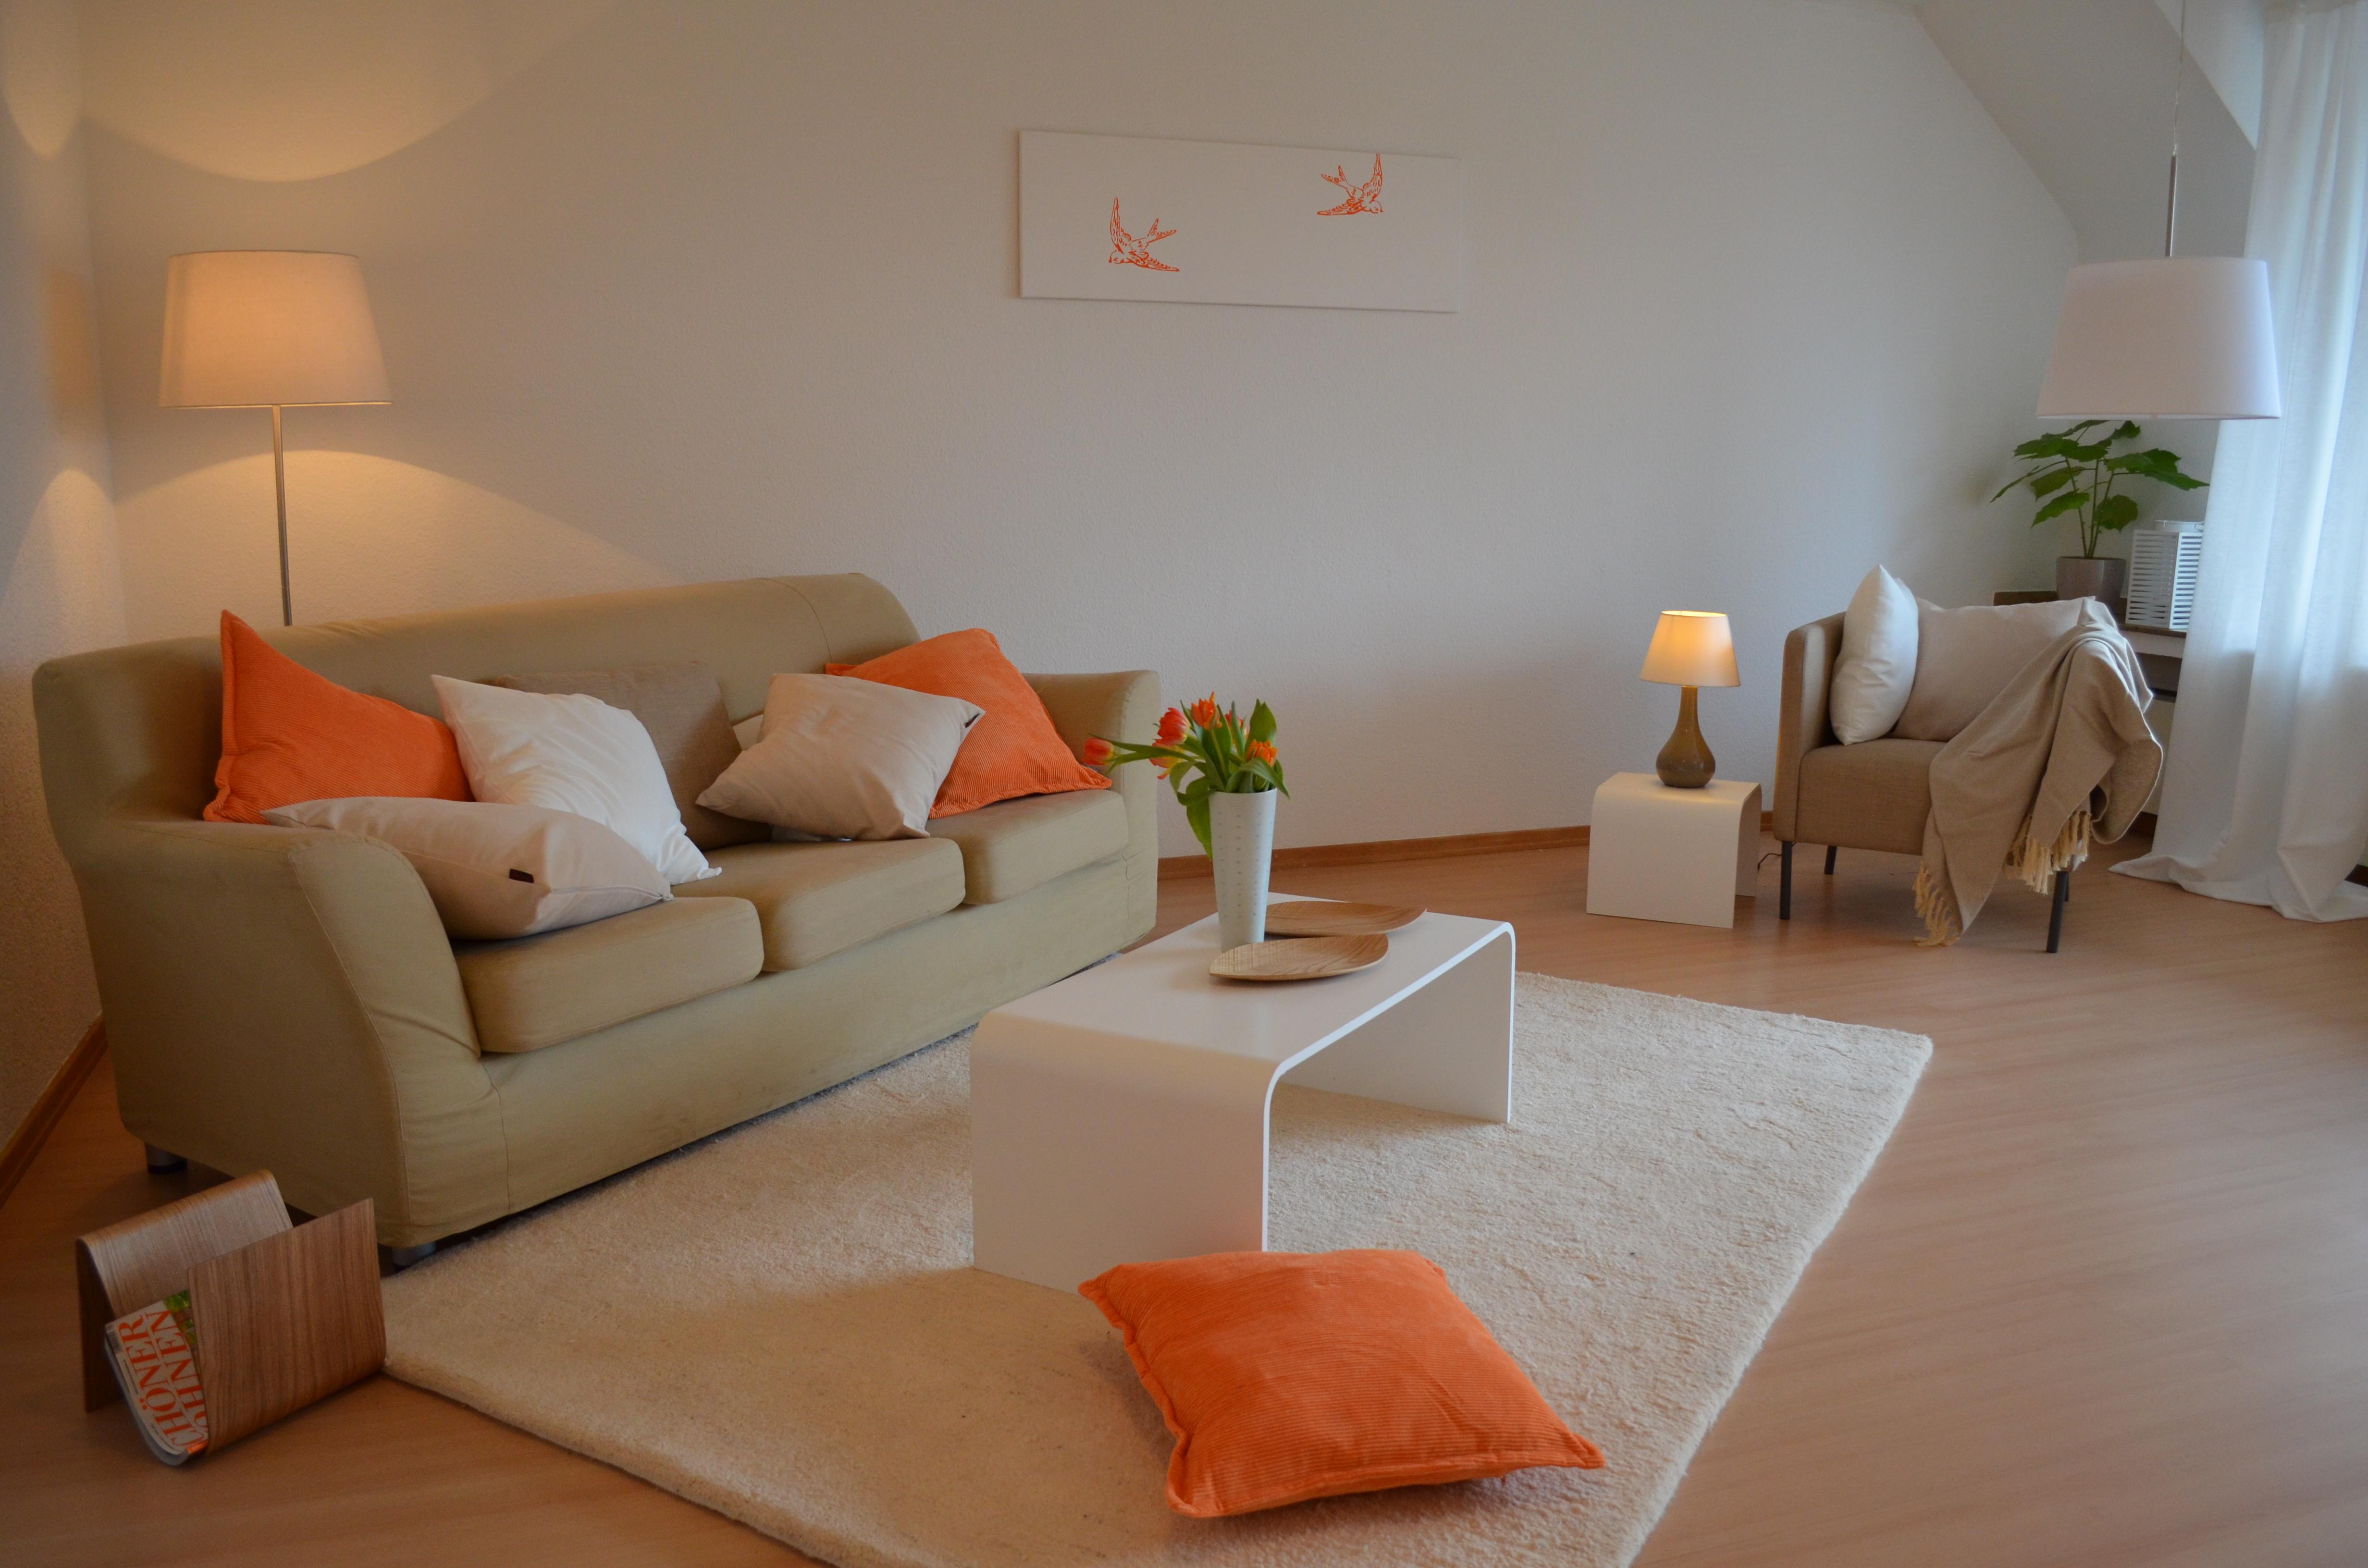 Wohnzimmer orange nachher #couchtisch #beistelltisch #teppich #wohnzimmer #sessel #stehlampe #sofakissen #laminat #sofa #weißercouchtisch #grünessofa ©feinrichten